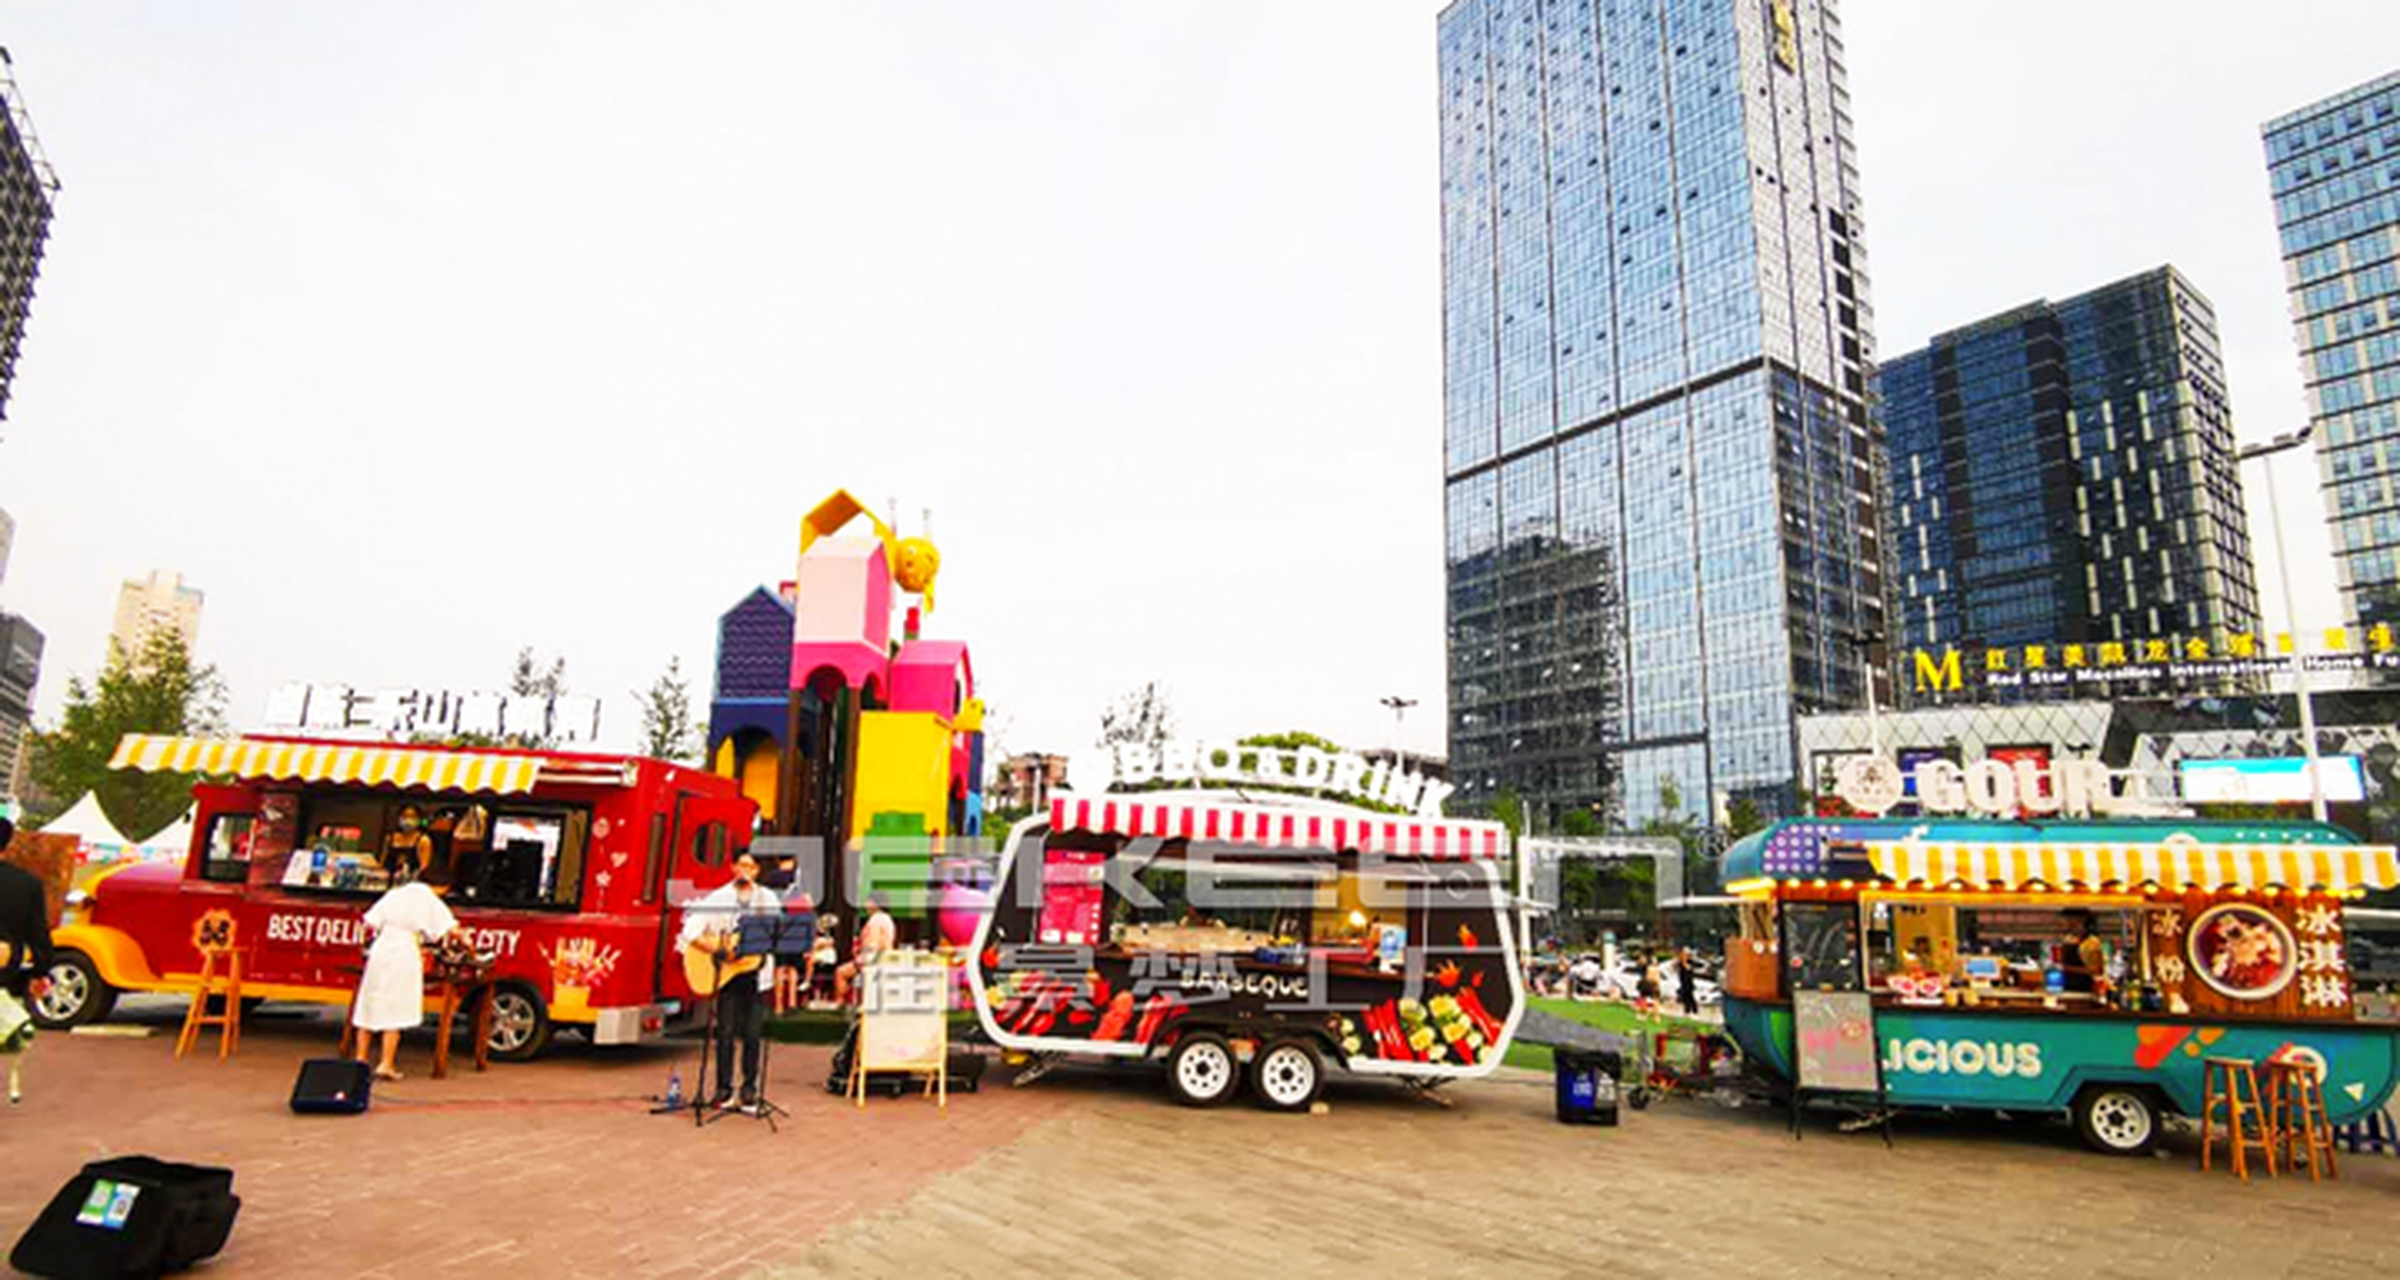 街景梦工厂 在成都沃尔玛广场的几辆流动餐车一字排开,搭配多种美食